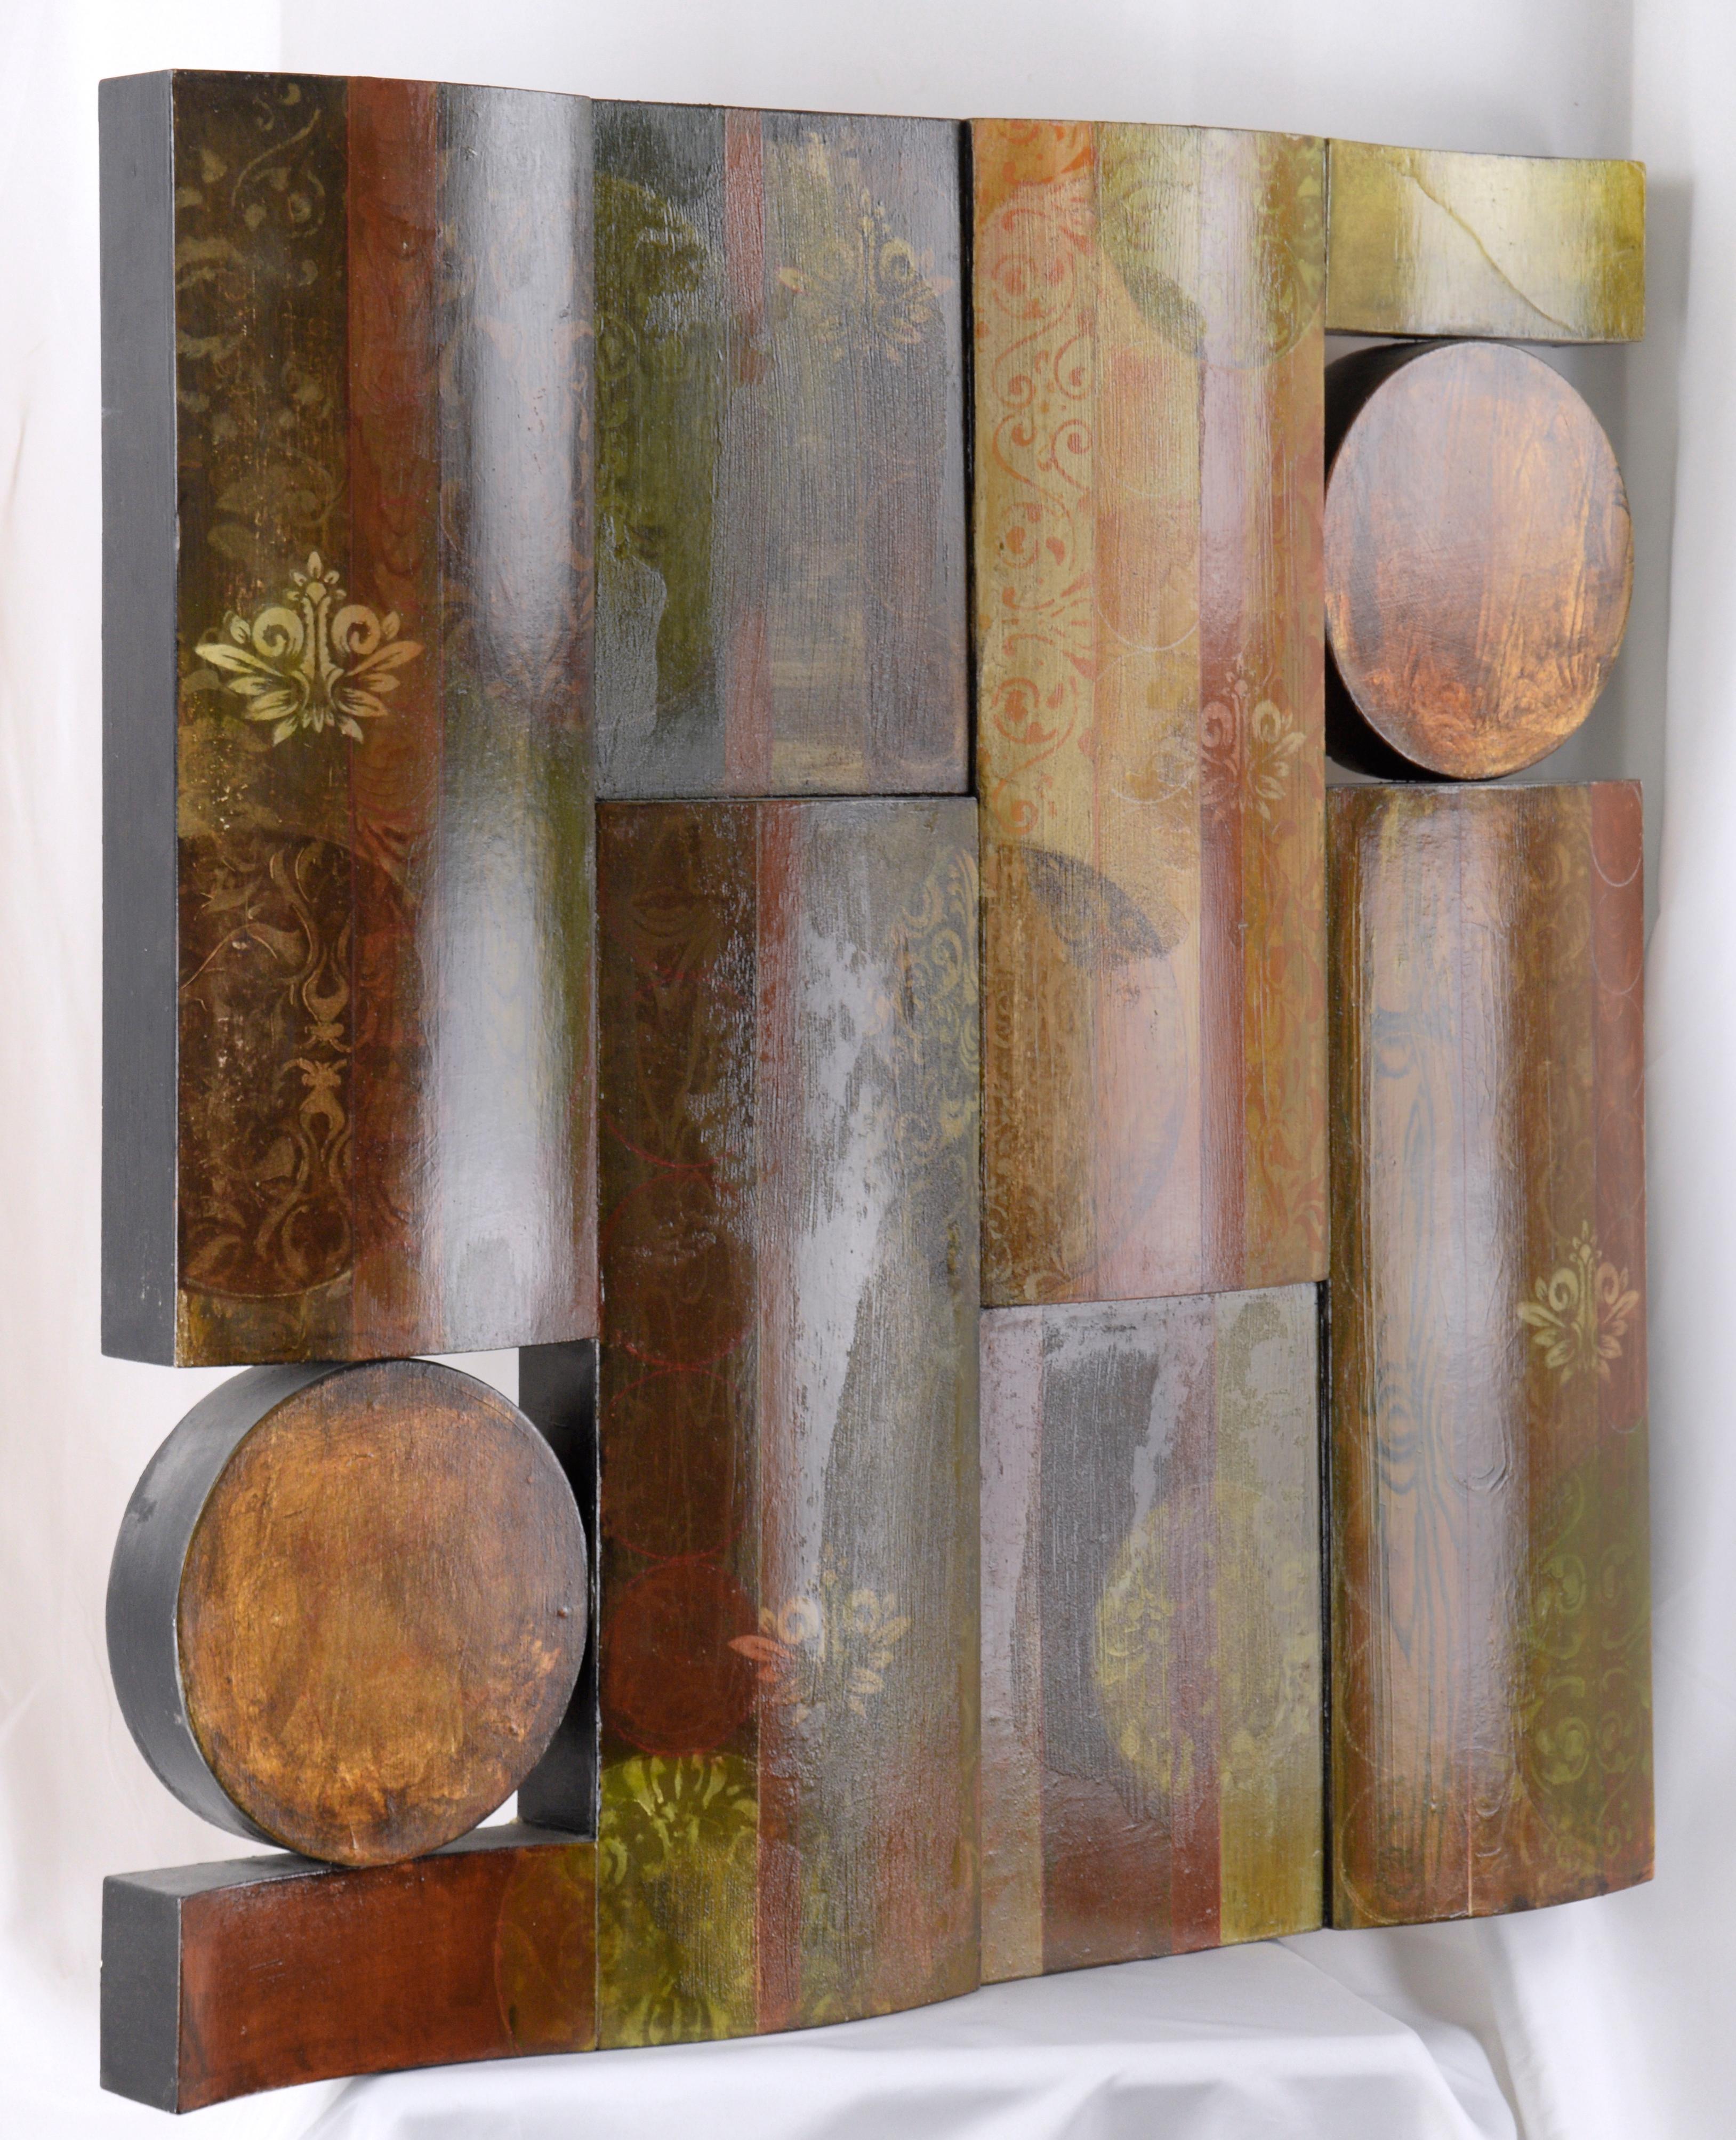 Wandskulptur mit Paisley- und Blumenmustern von Jessica Godisak (Amerikanerin, geb. 1977). Dieses maßstabsgetreue Stück besteht aus mehreren miteinander verbundenen Holzformen. Bei den kreisförmigen Stücken gibt es einen leeren Raum, so dass die